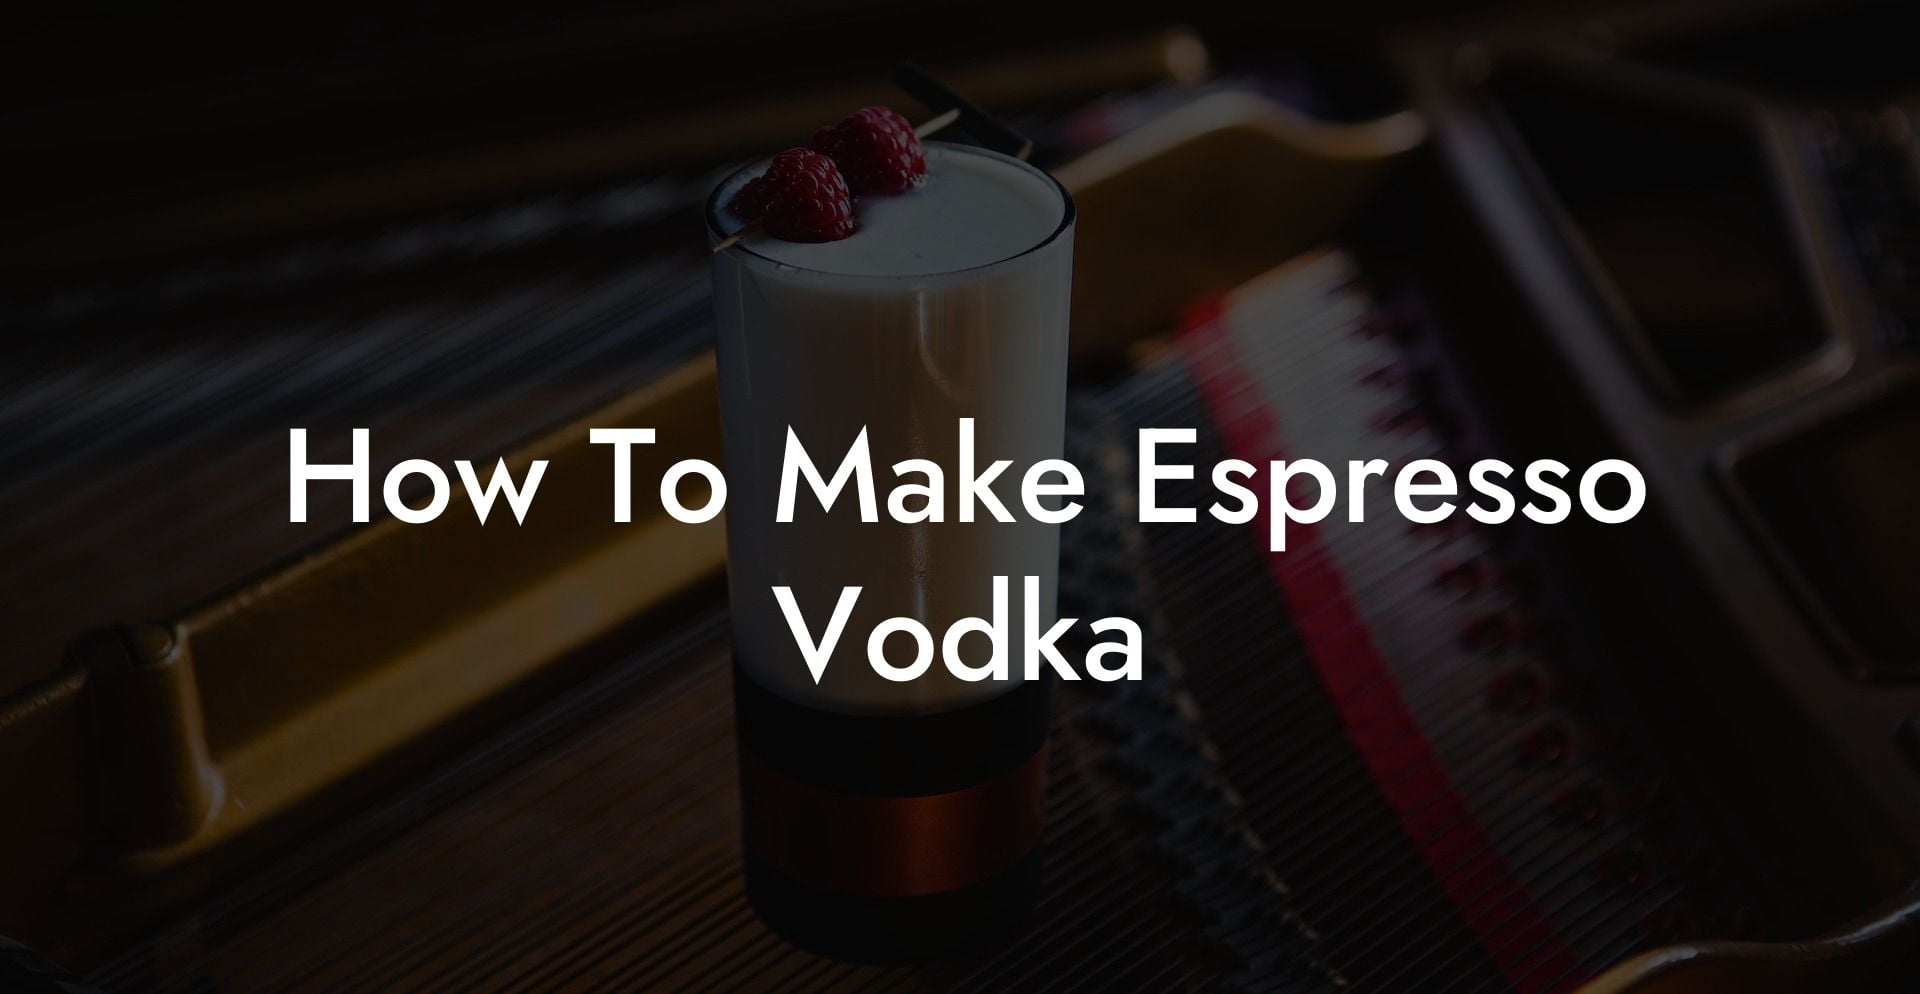 How To Make Espresso Vodka